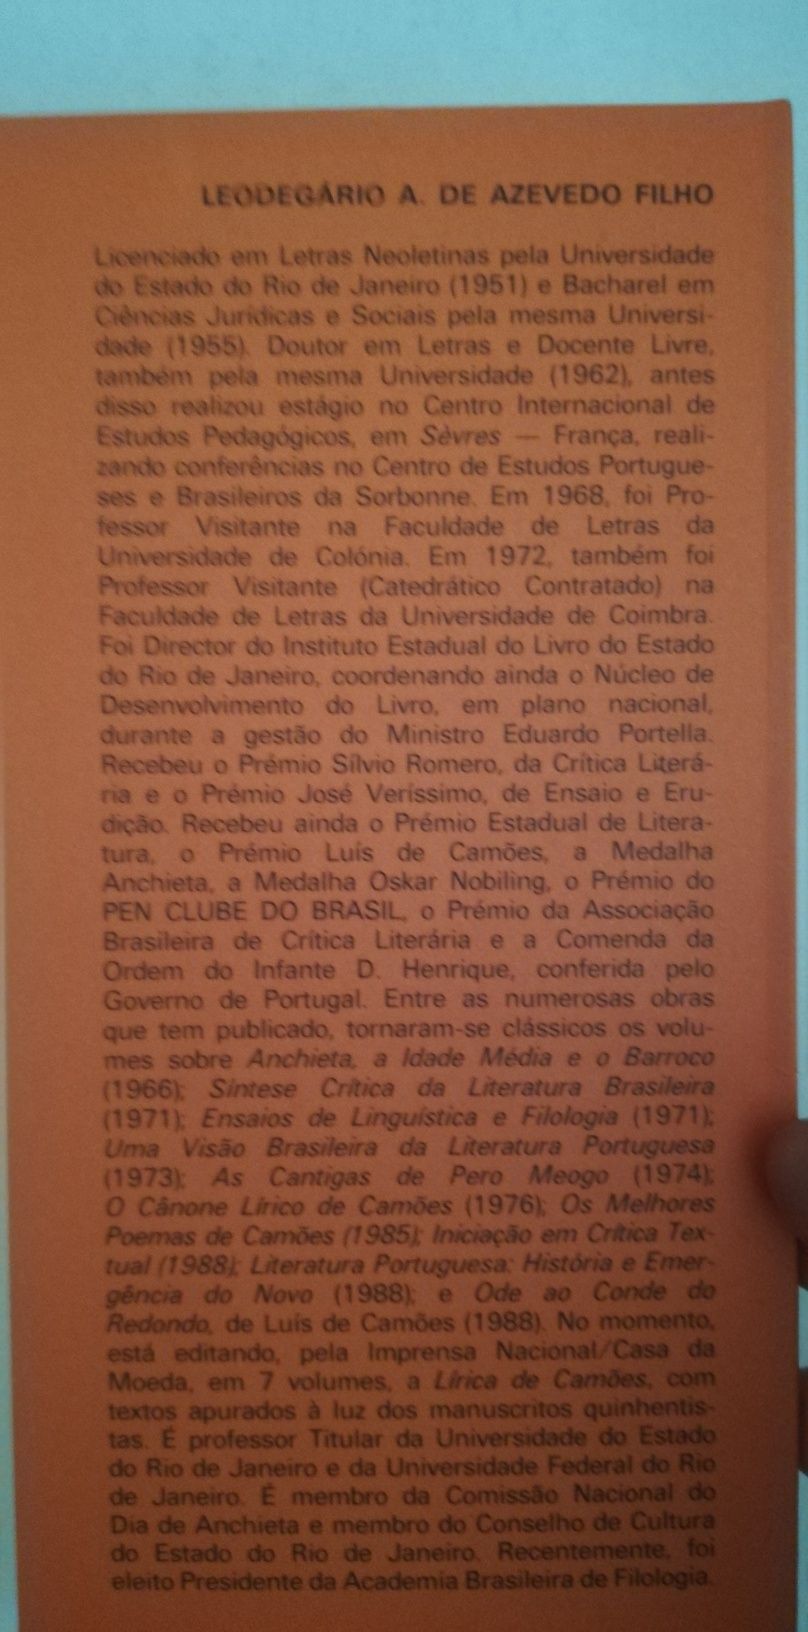 Introdução à Lírica de Camões, de Leodegário de Azevedo Filho